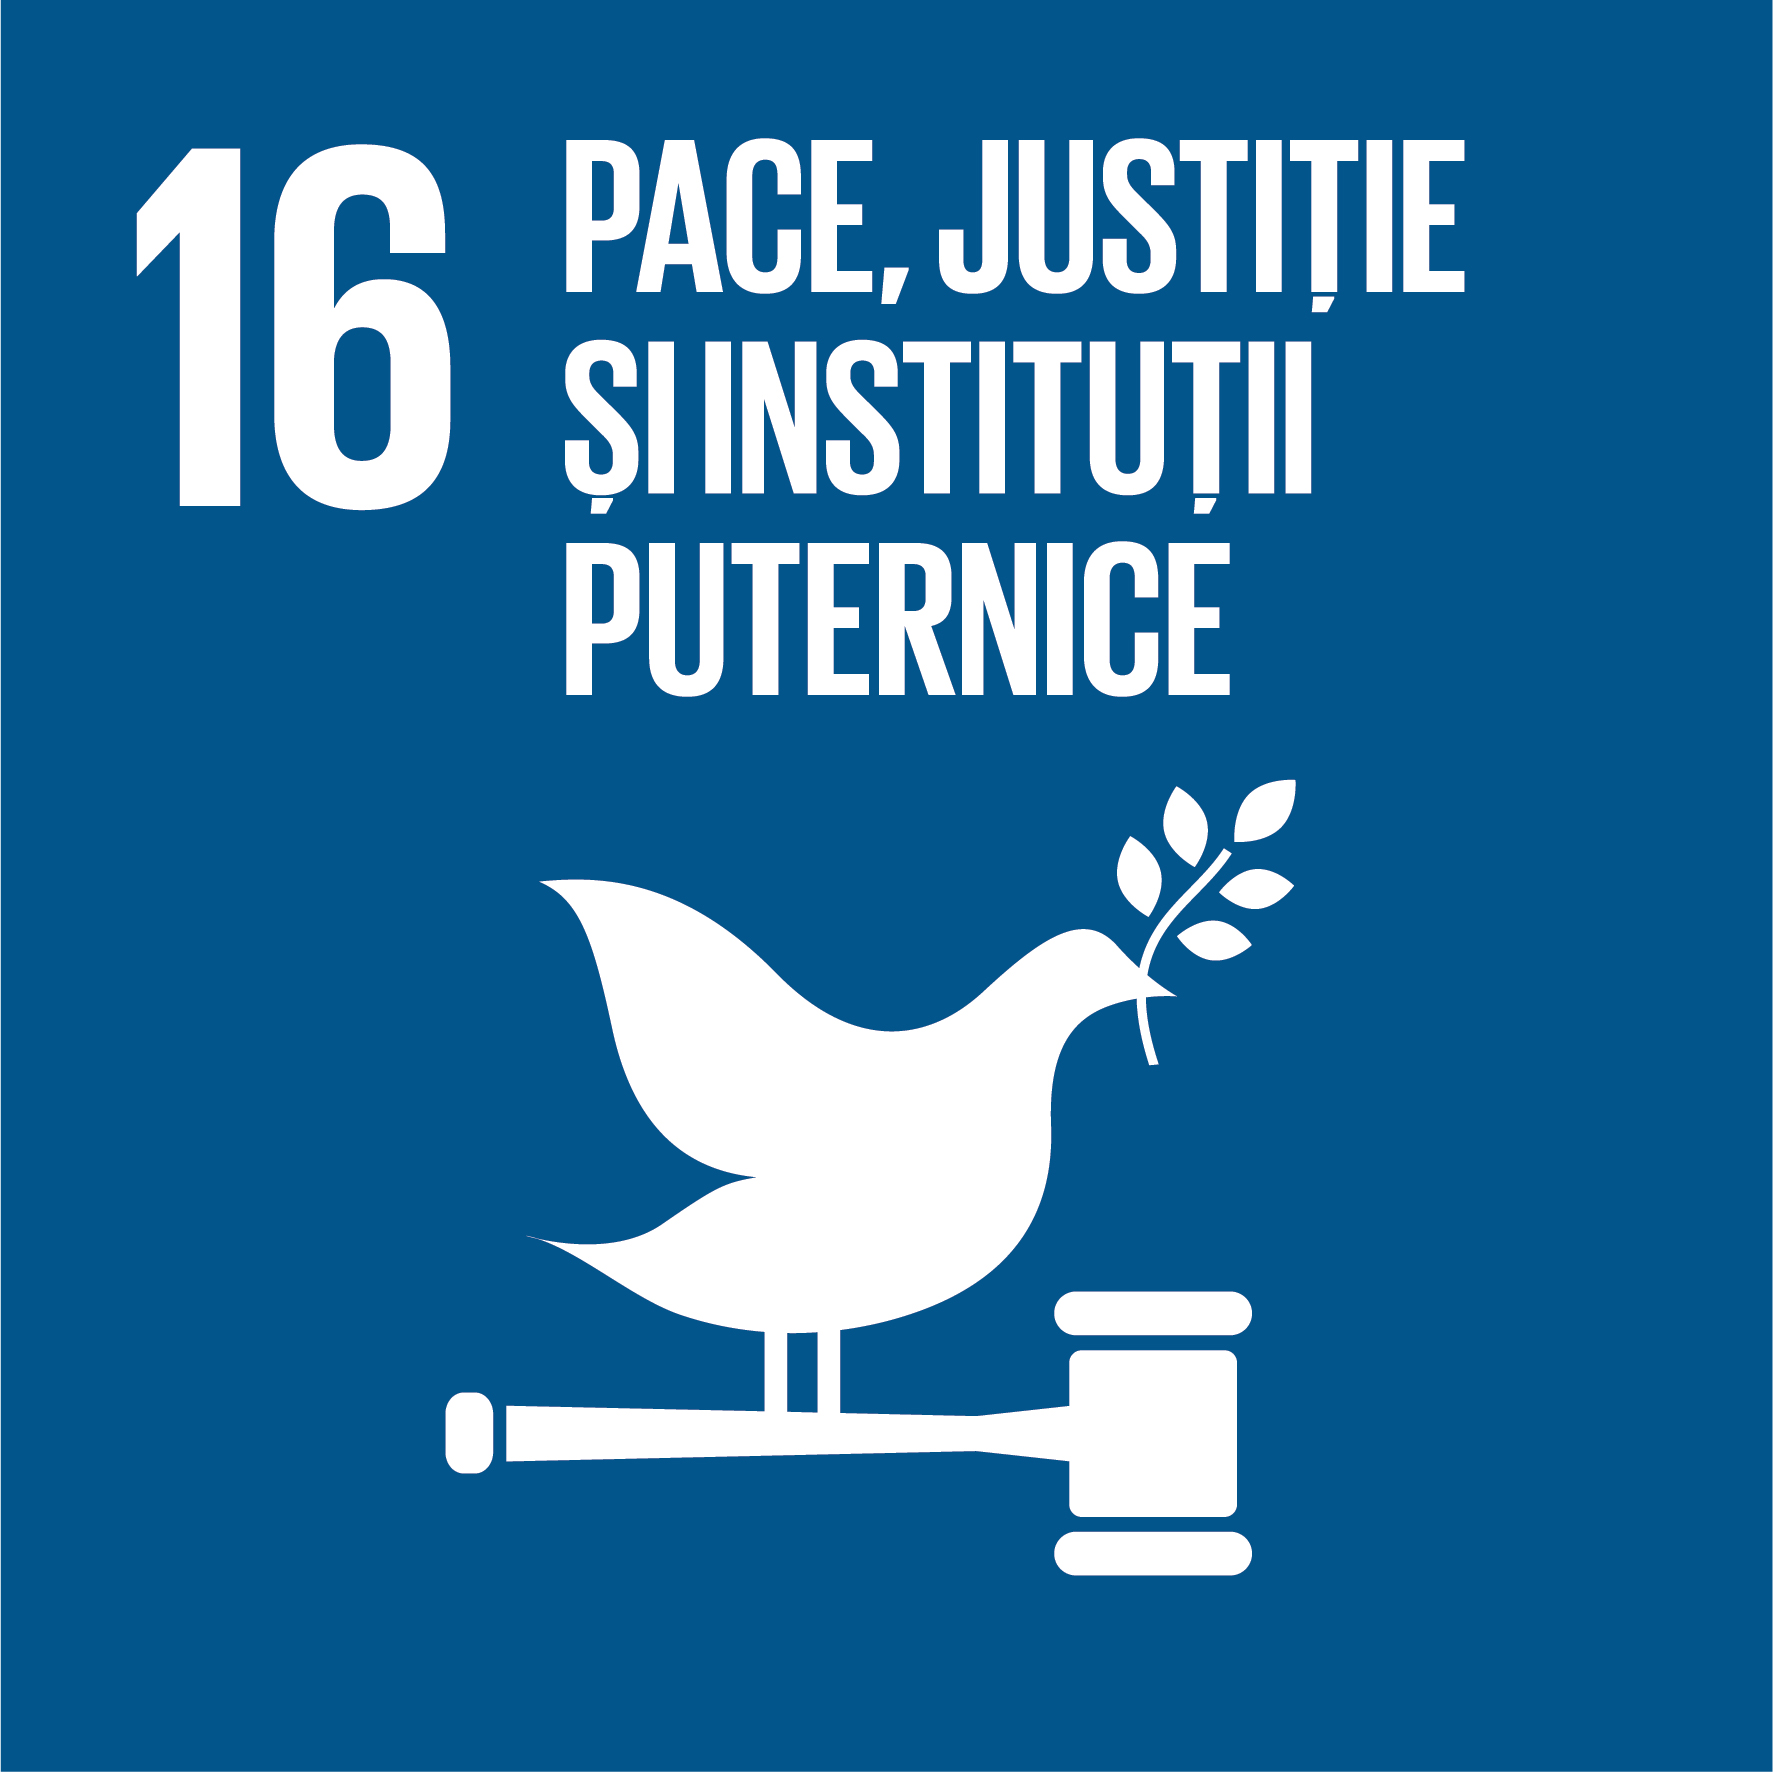 Pace, justiție și instituții puternice - Obiectiv 16